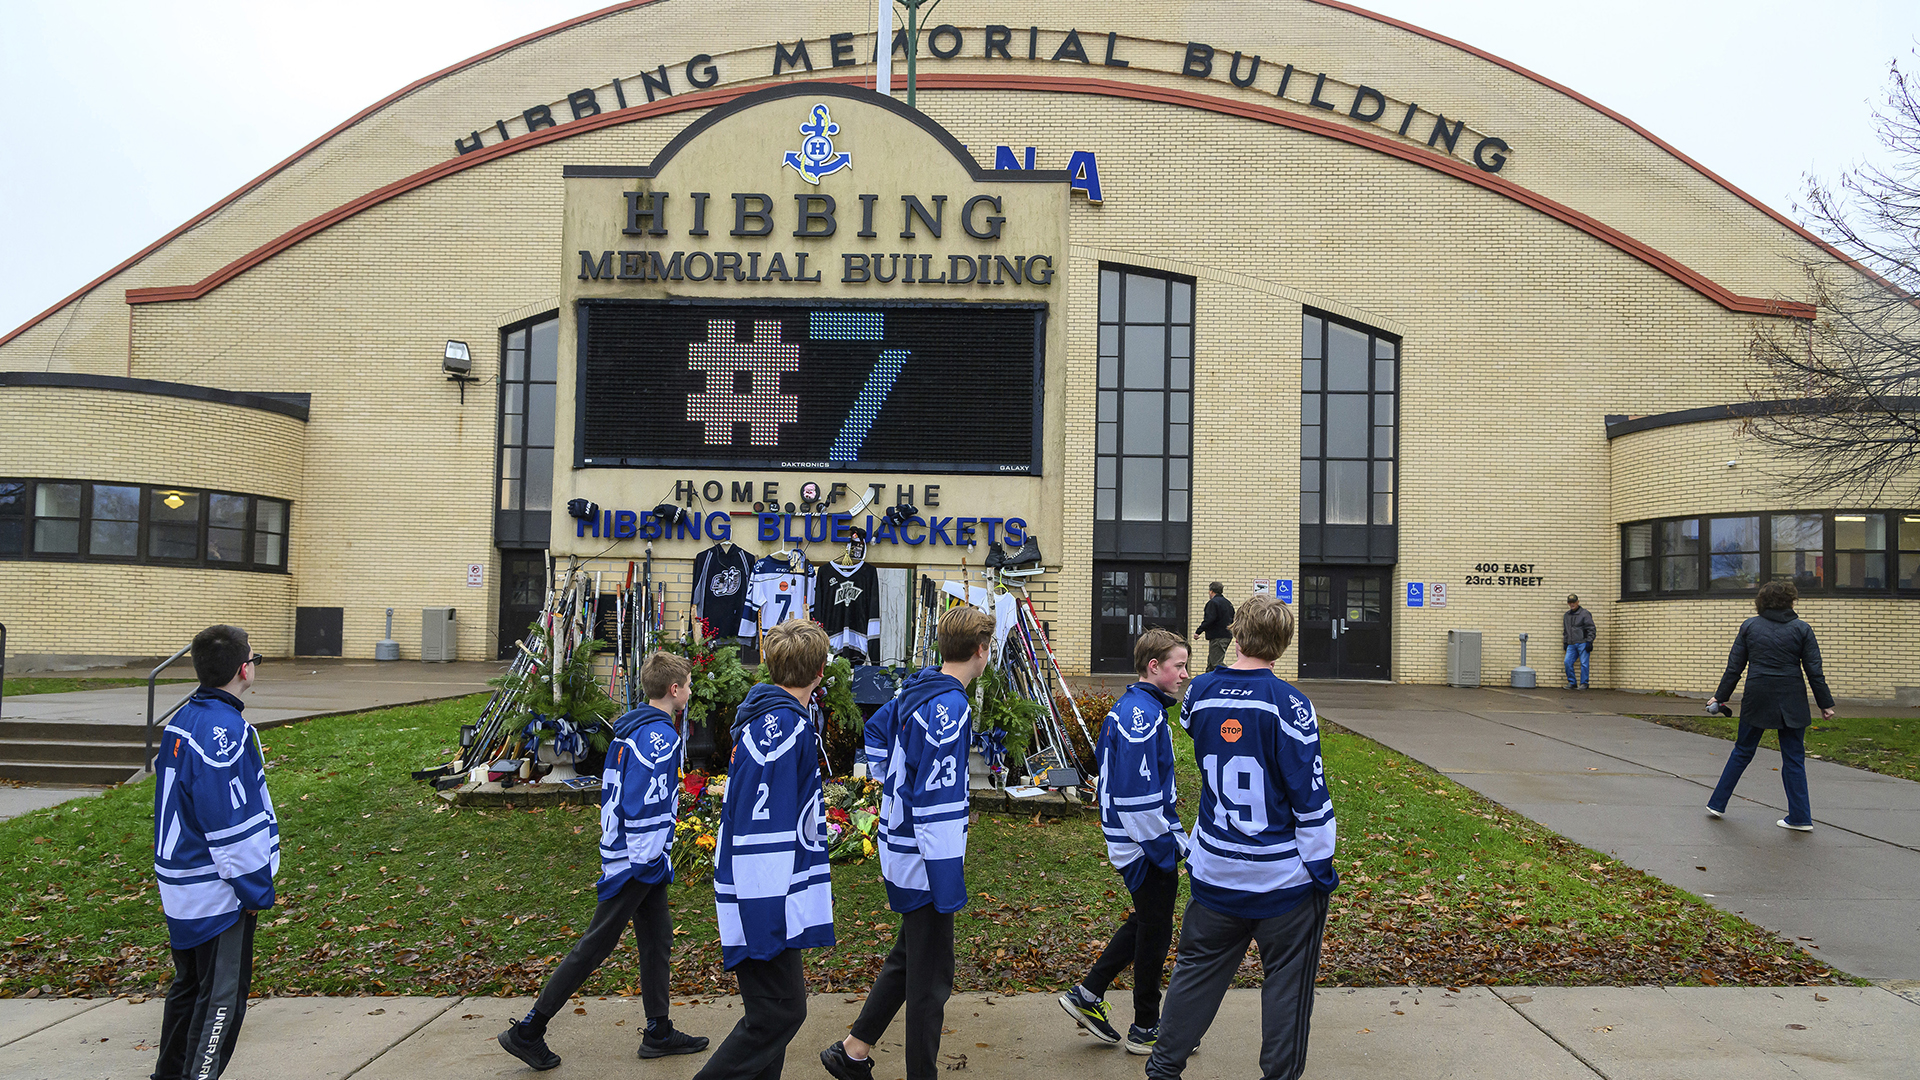 Des membres de l'équipe de hockey de l'école secondaire de Hibbing au Minnesota passent devant le Hibbing Memorial Building le 6 novembre 2023 où a été érigé un hommage à Adam Johnson, décédé après avoir été atteint à la gorge par la lame d'un patin dans un match en Angleterre.